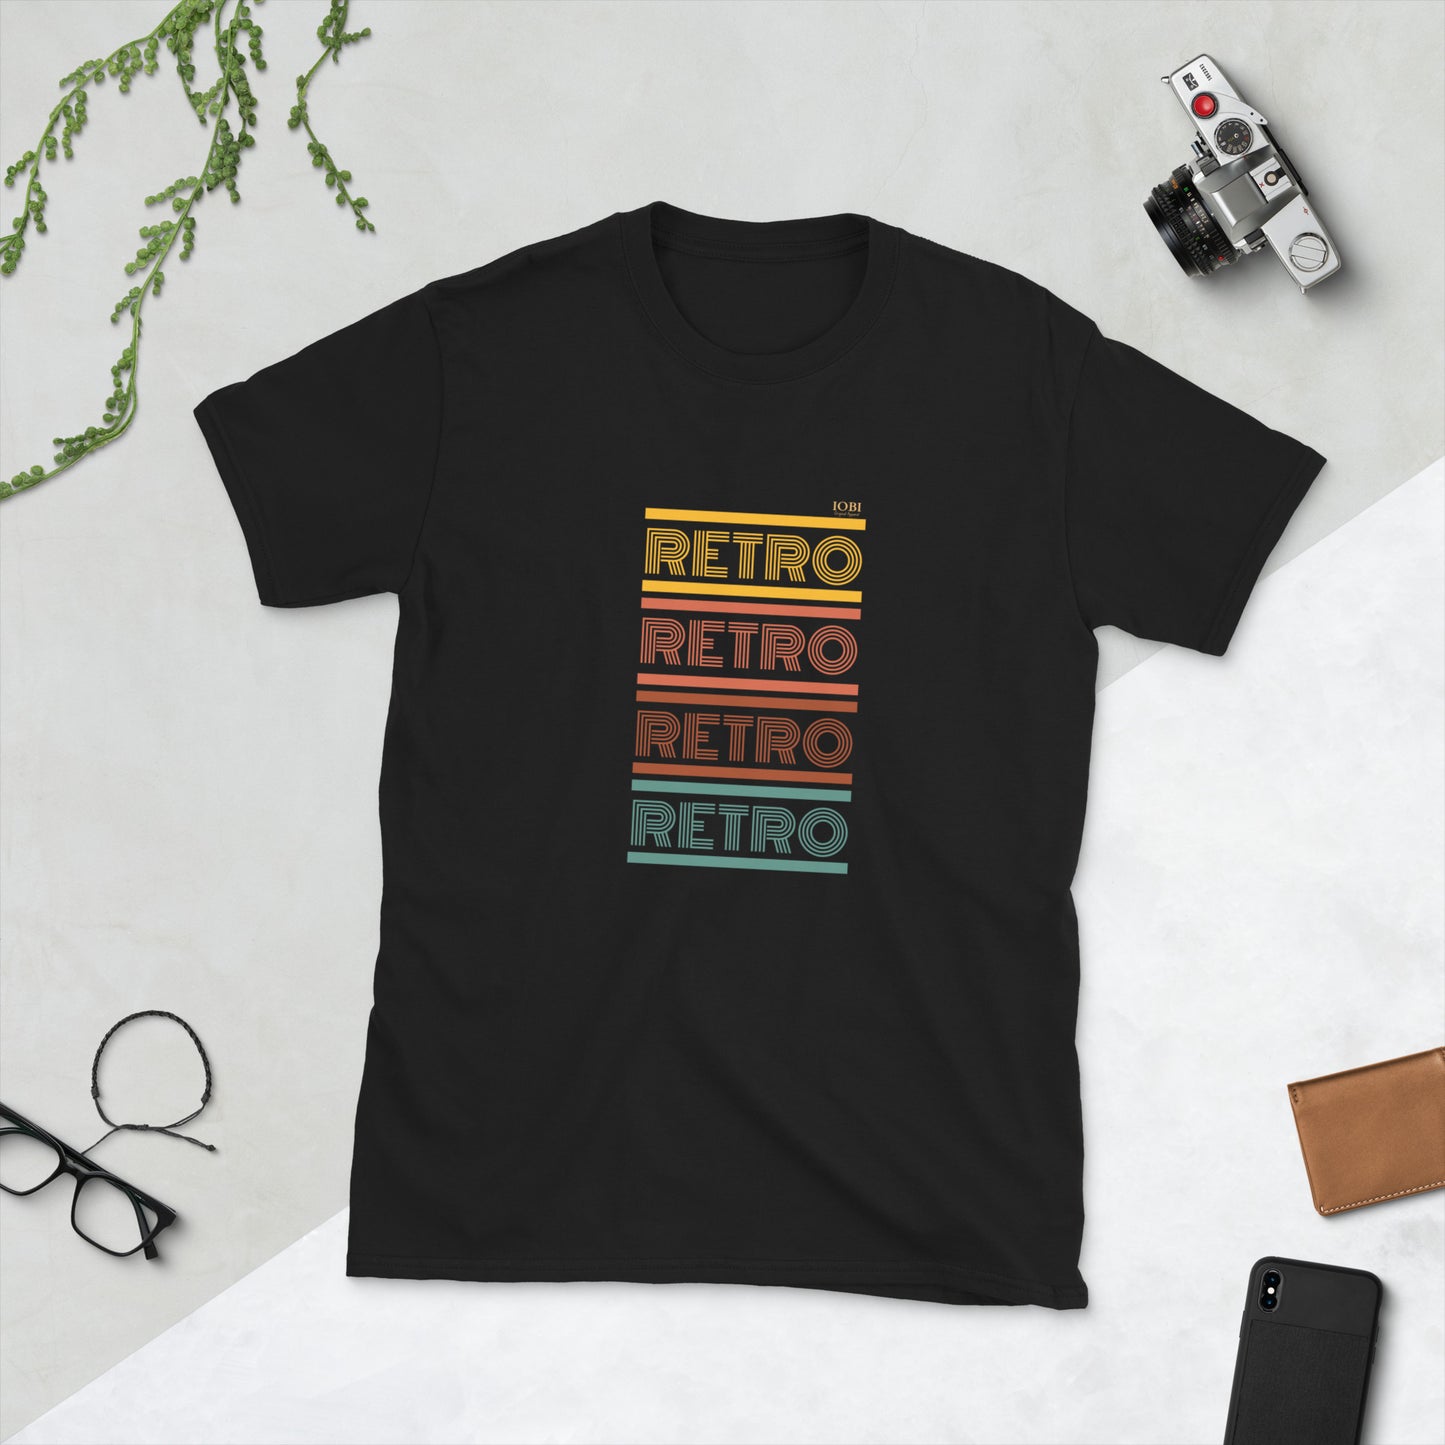 Short-Sleeve Men Soft T-Shirt Color Retro Symbol Design by IOBI Original Apparel